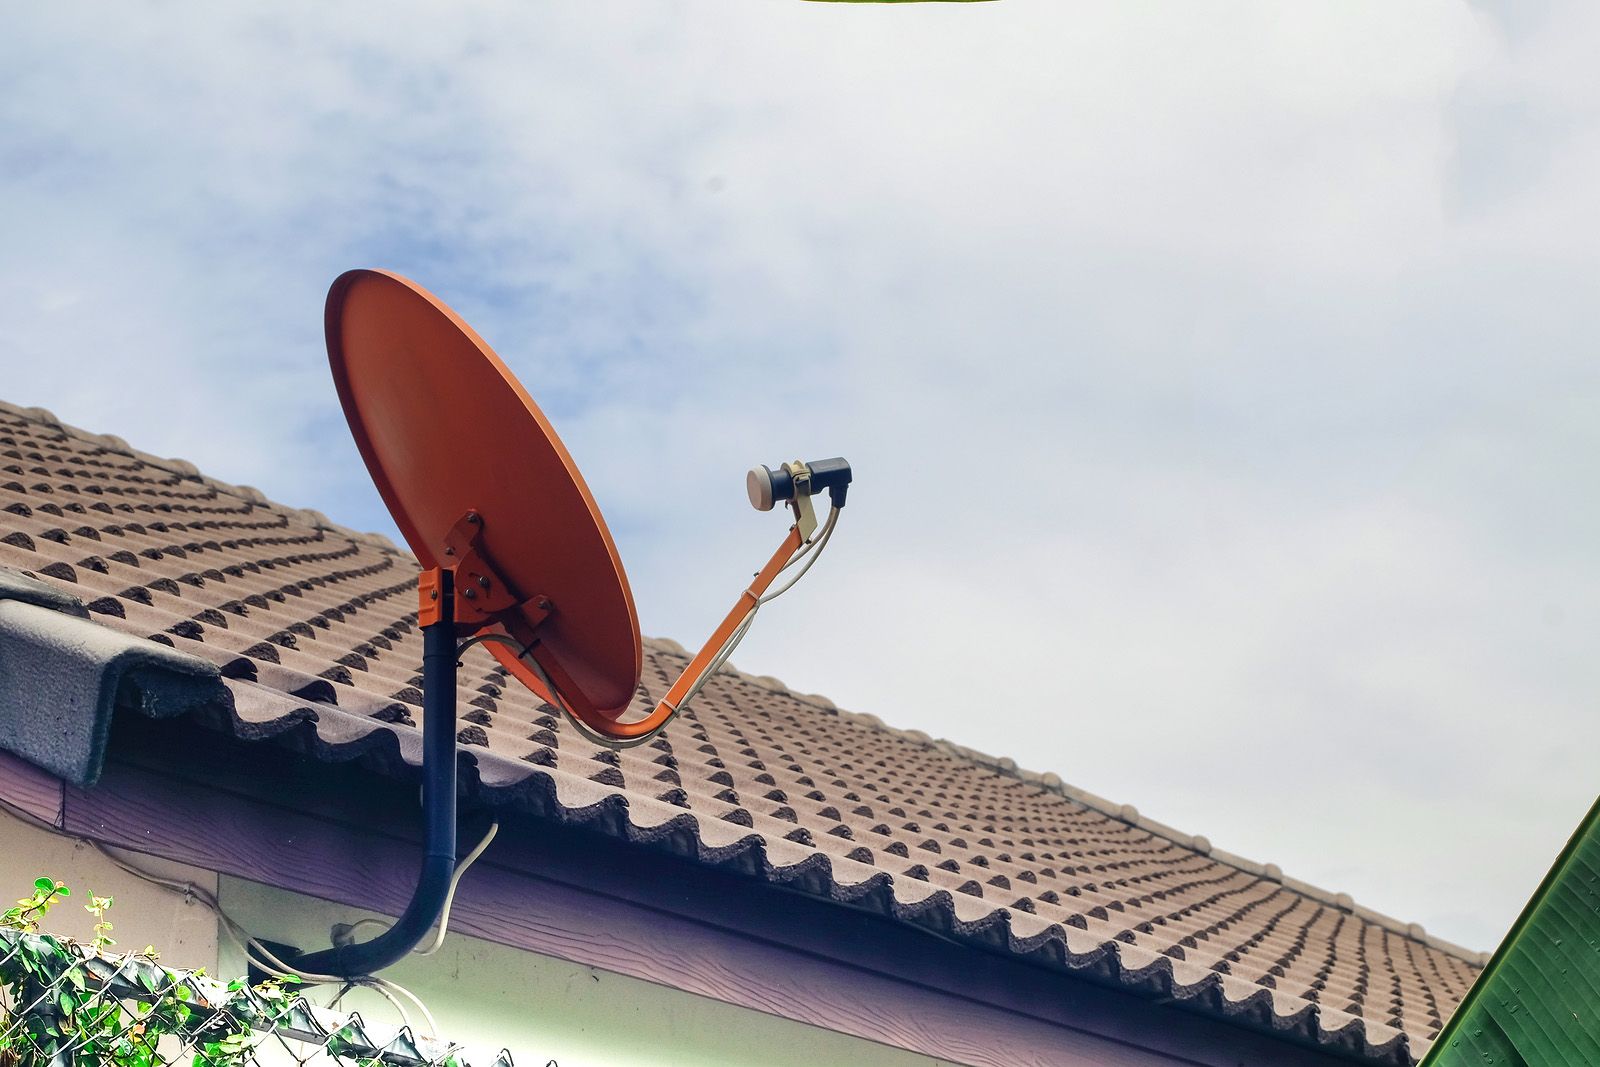 ¿Qué debo tener en cuenta si quiero poner una antena parabólica en mi casa?